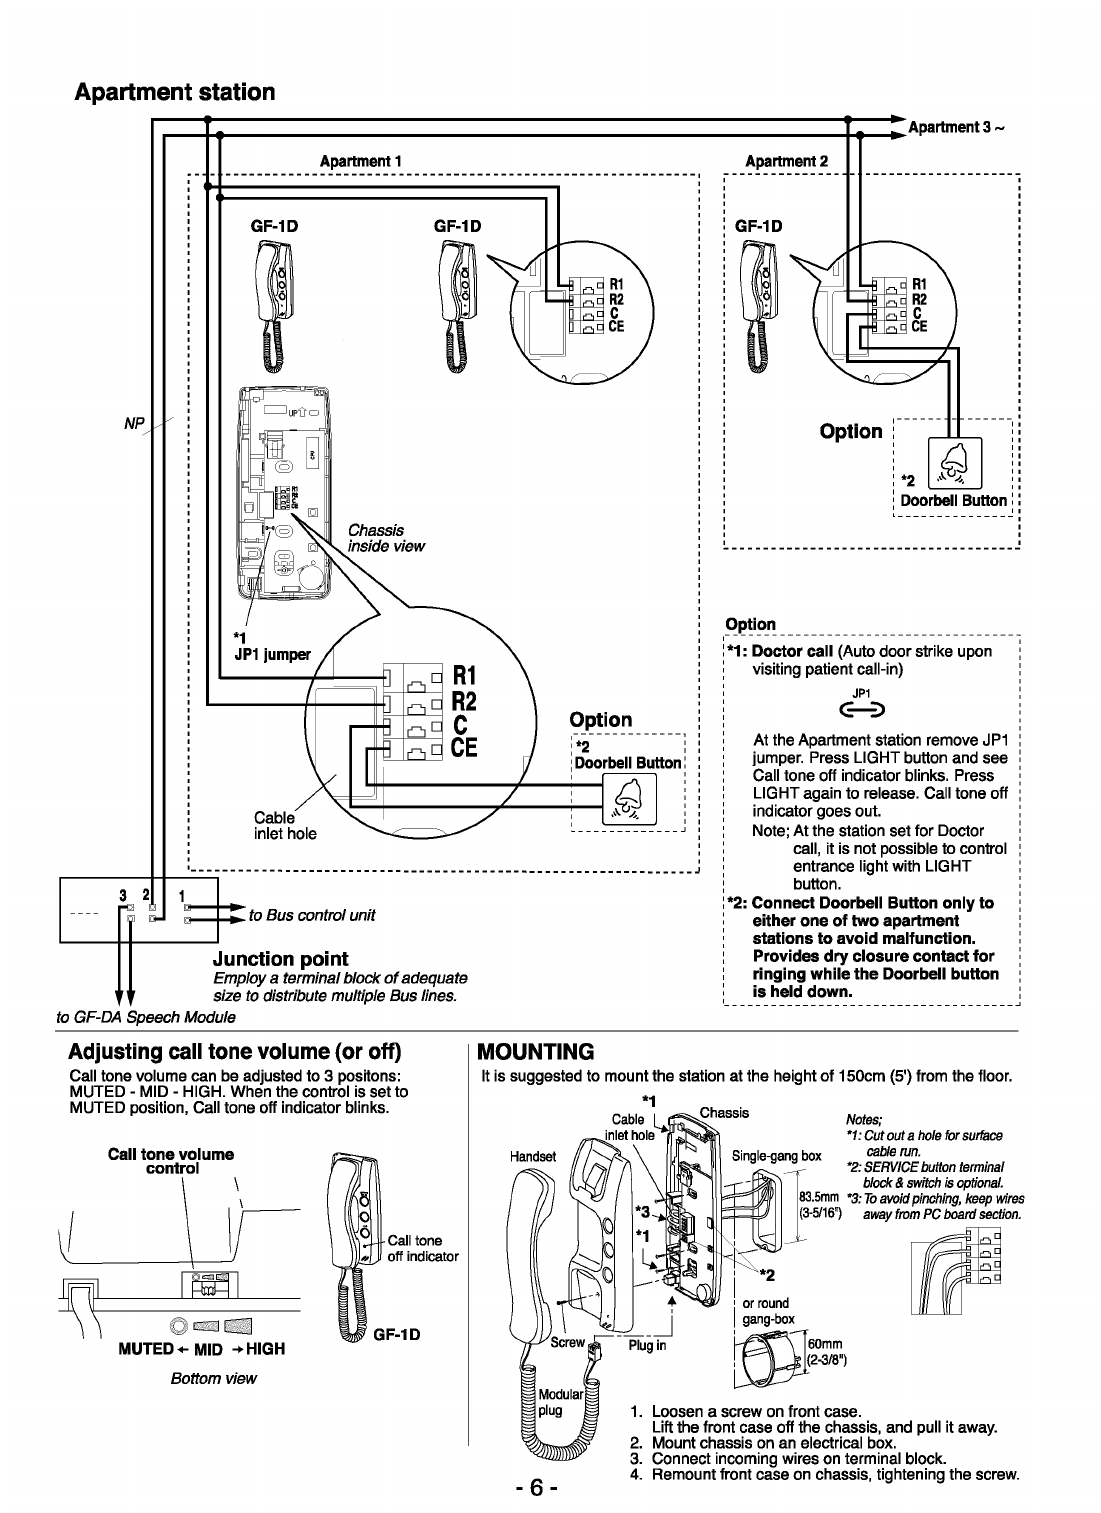 Radio shack 43-3105 intercom system user manual online